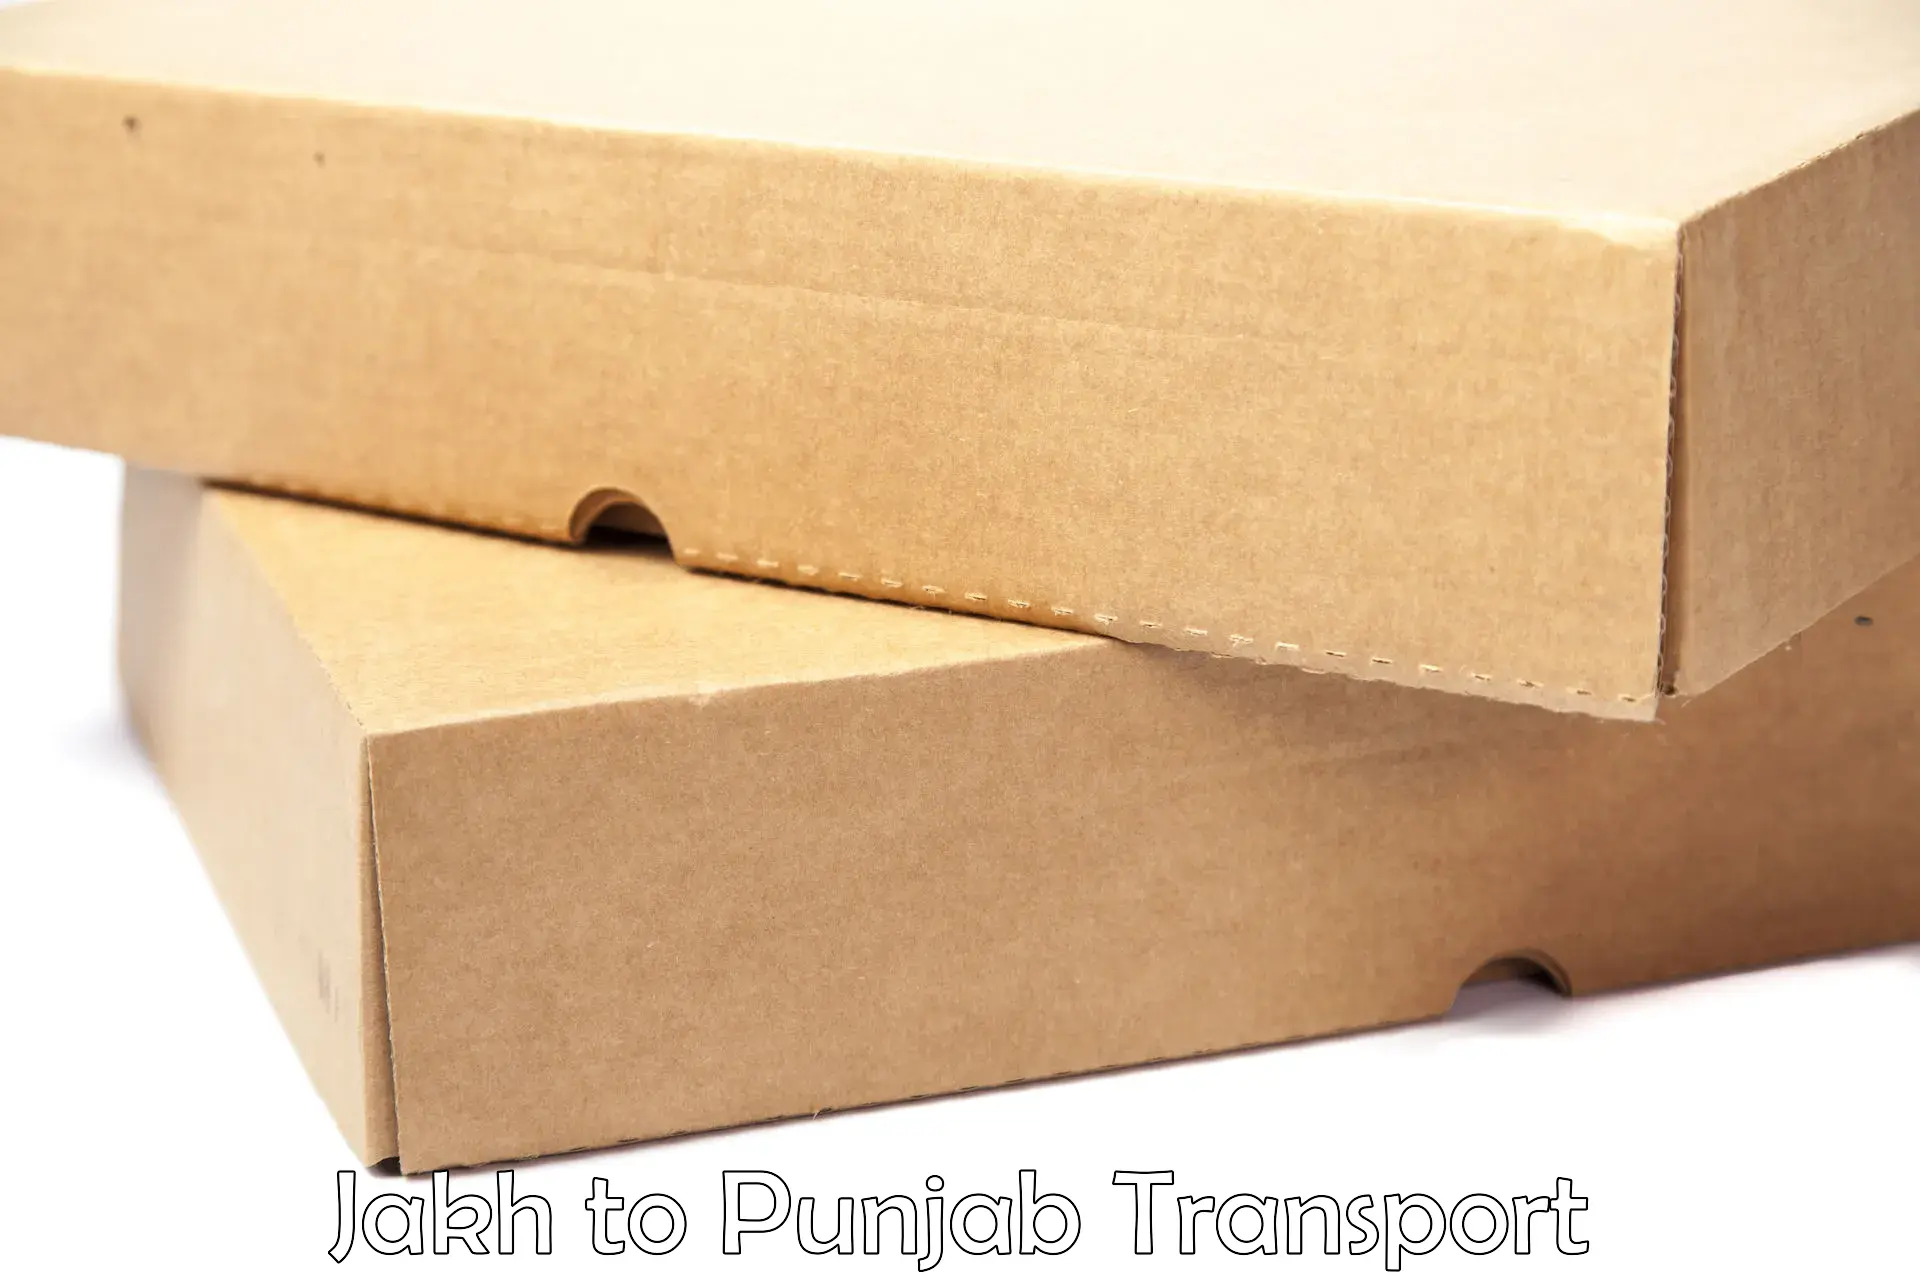 Vehicle parcel service Jakh to Punjab